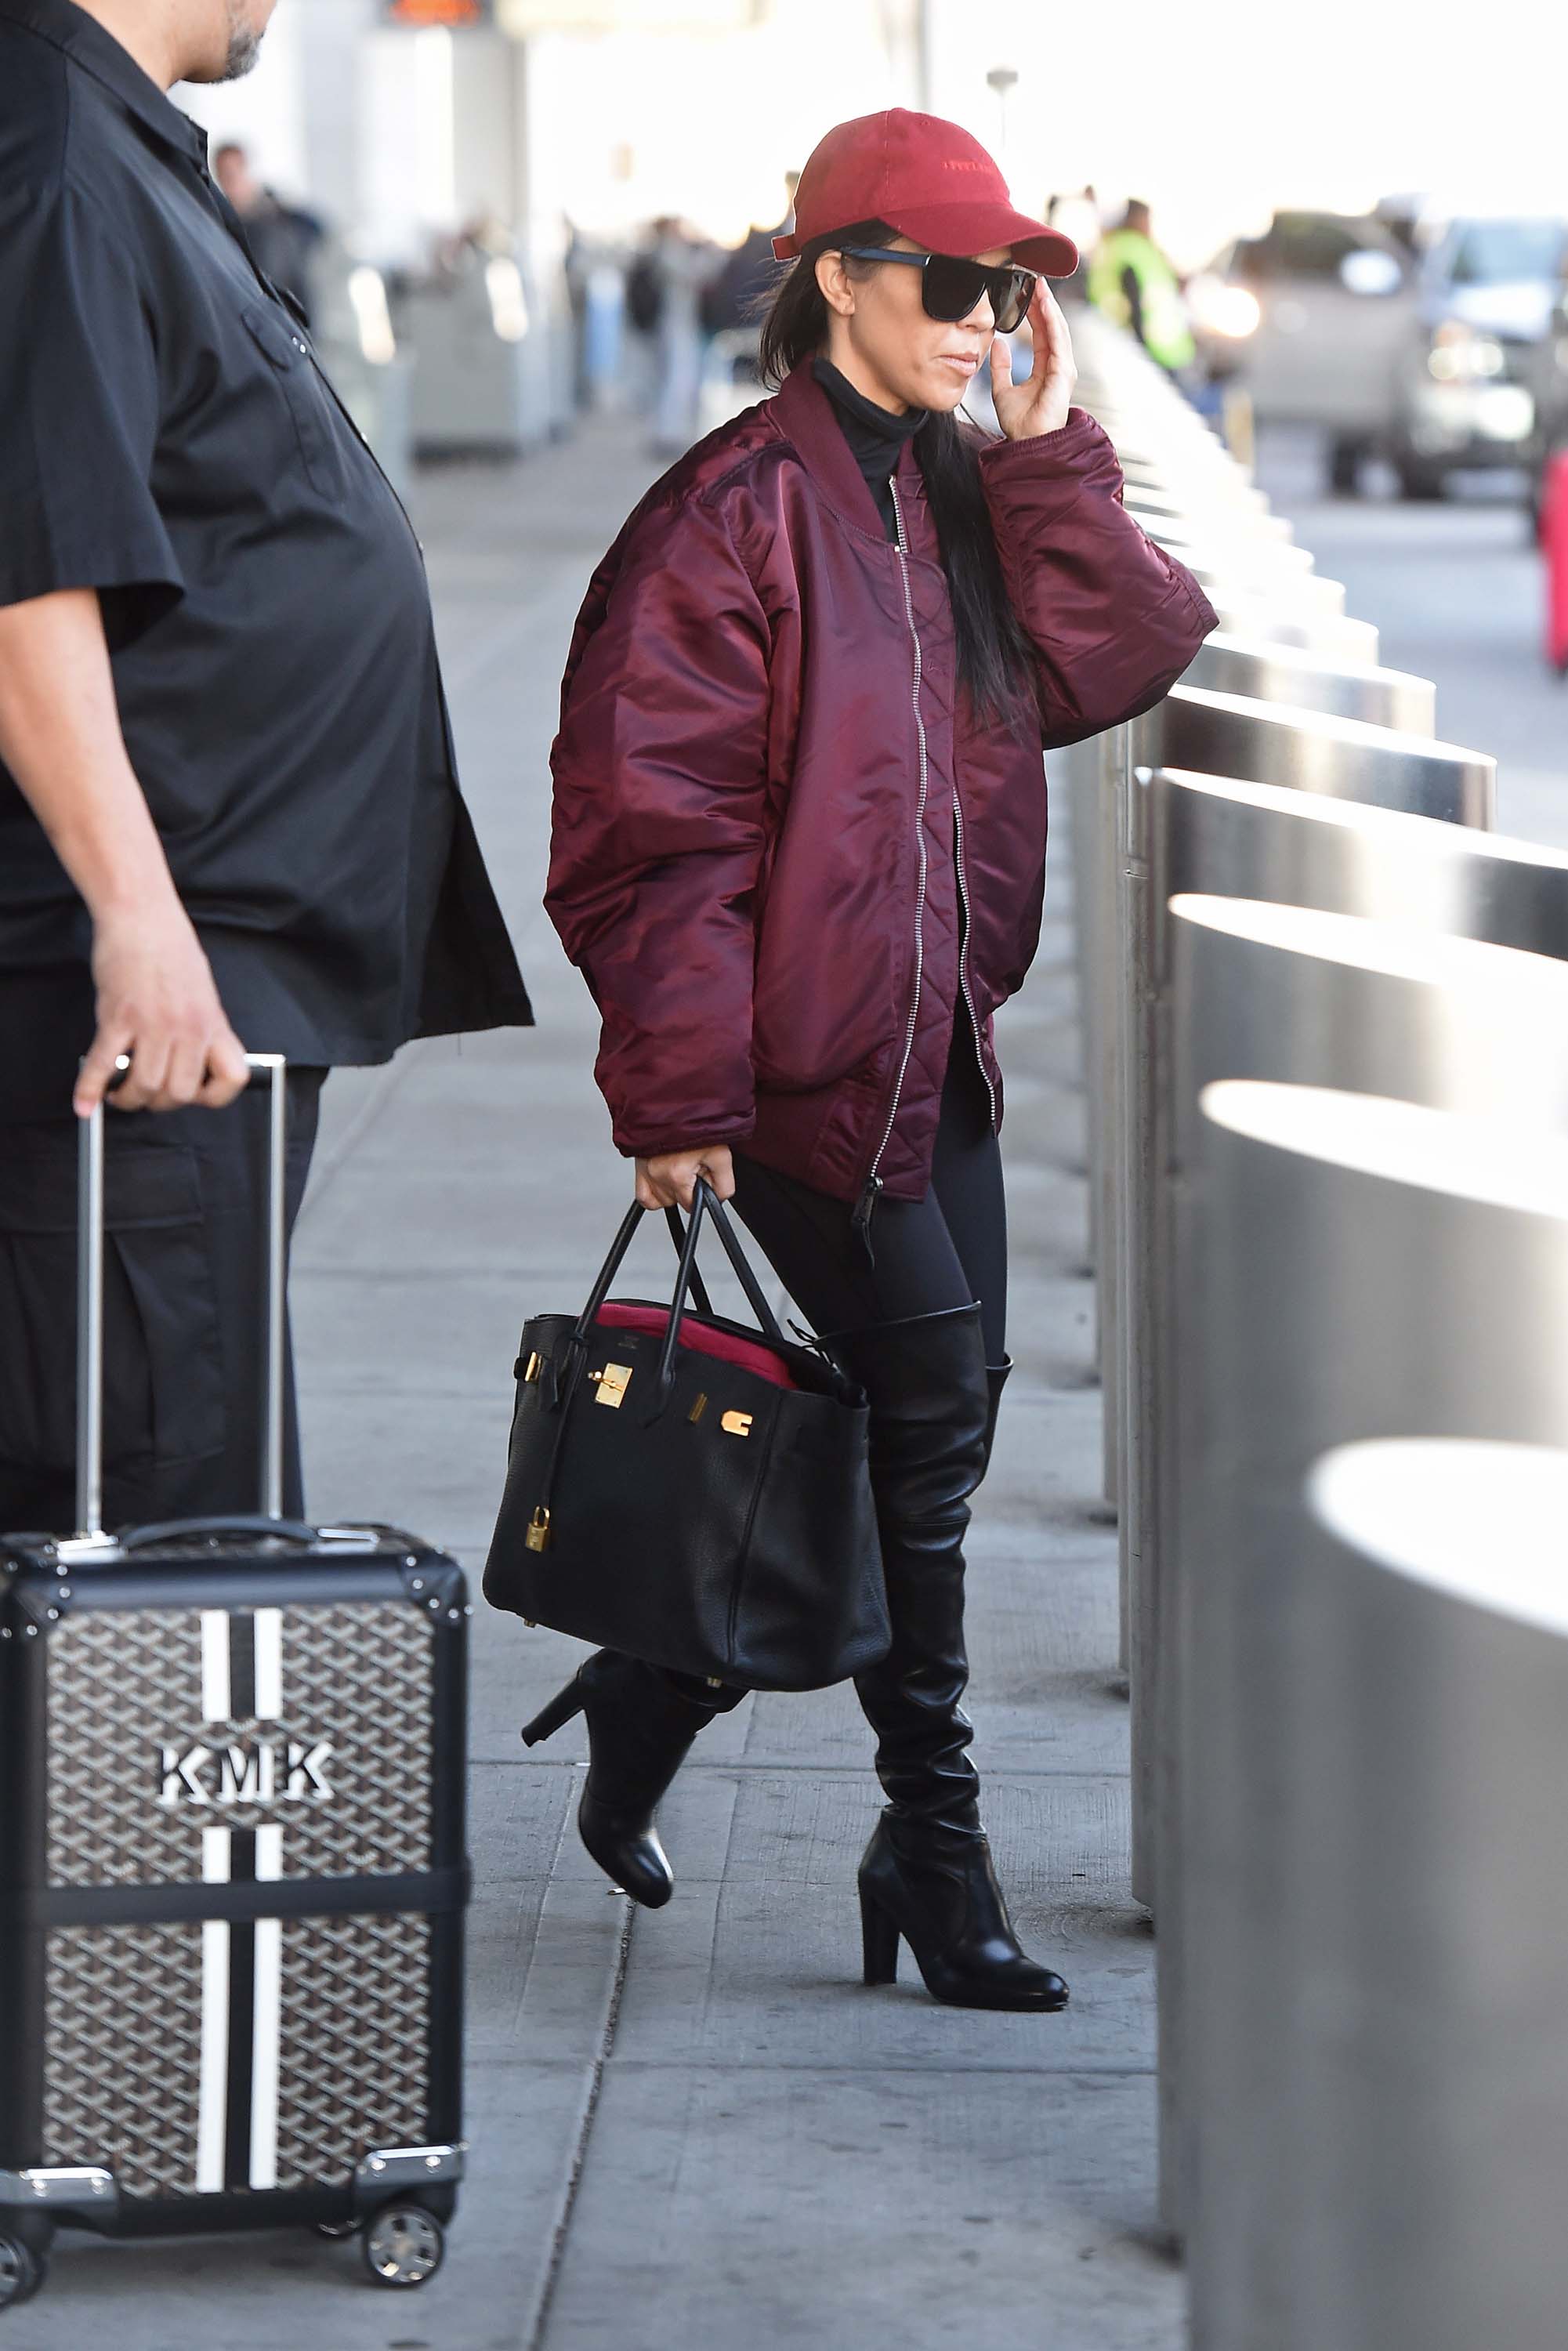 Kourtney Kardashian making her way through JFK airport